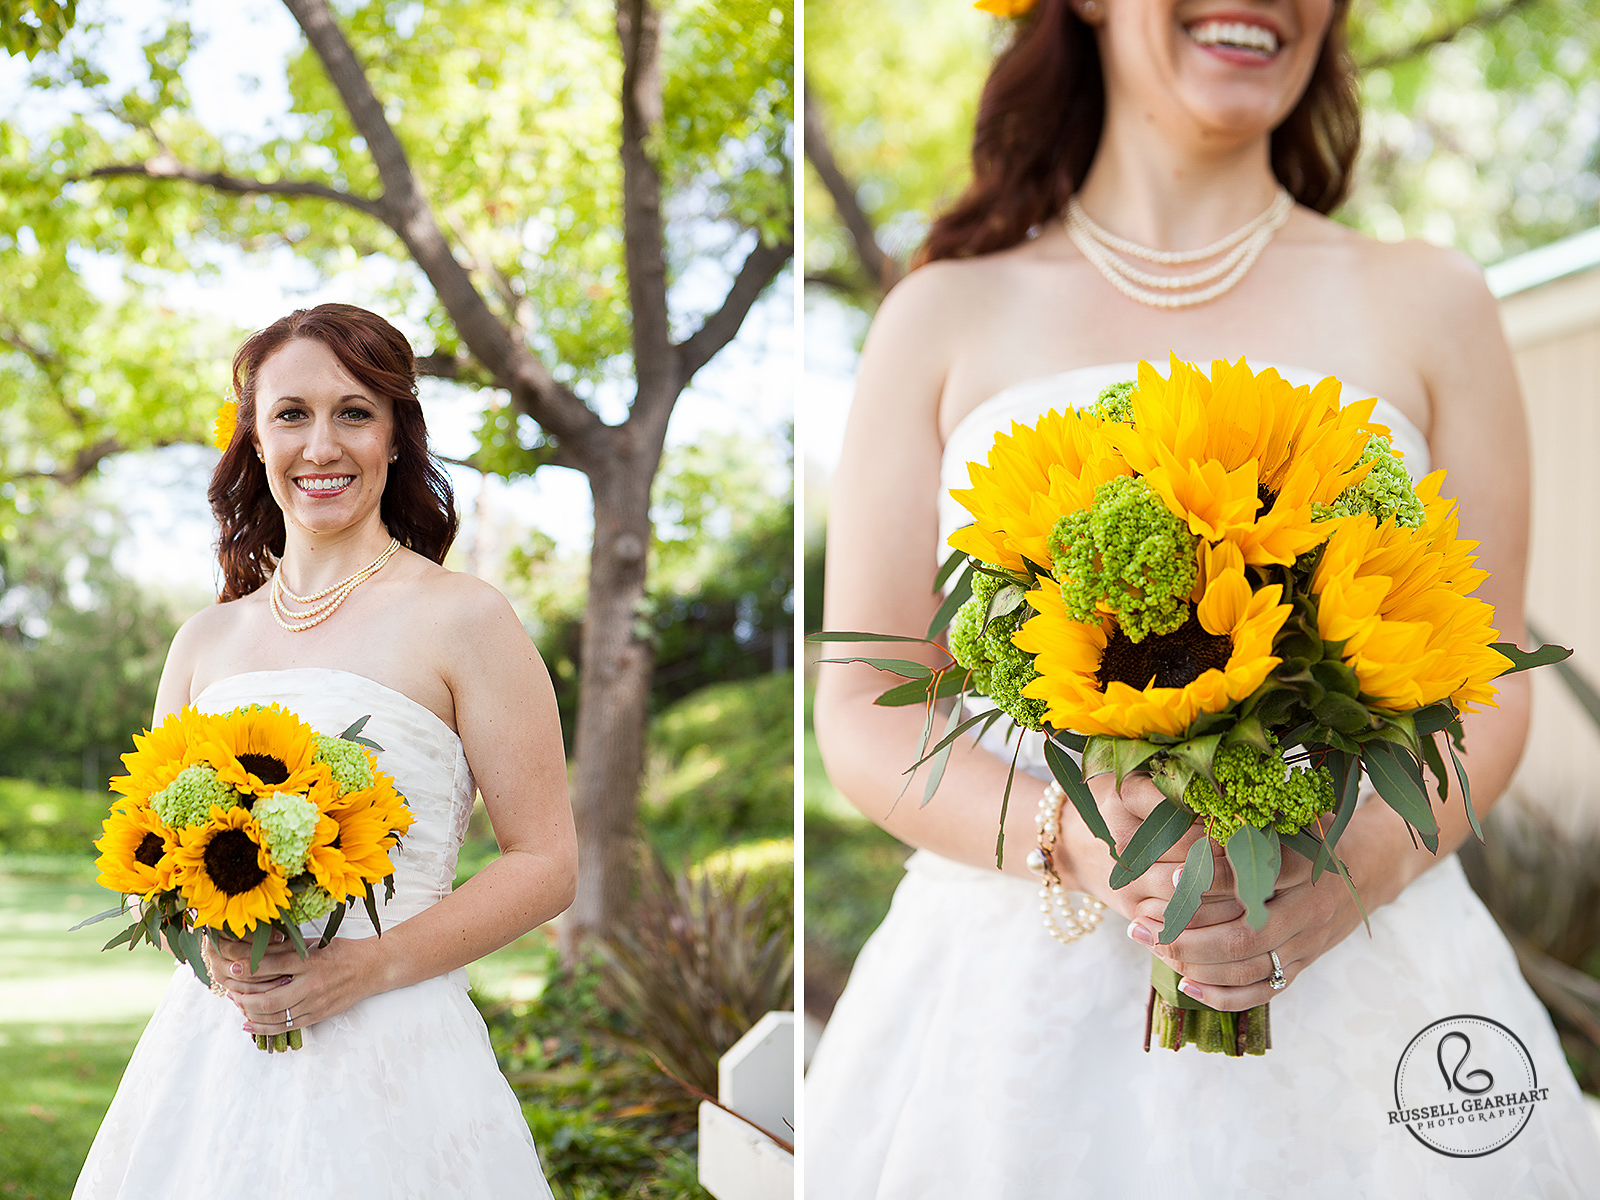 Sunflower Bridal Bouquet - Sunflower Wedding – Knott’s Berry Farm – Russell Gearhart Photography – www.gearhartphoto.com